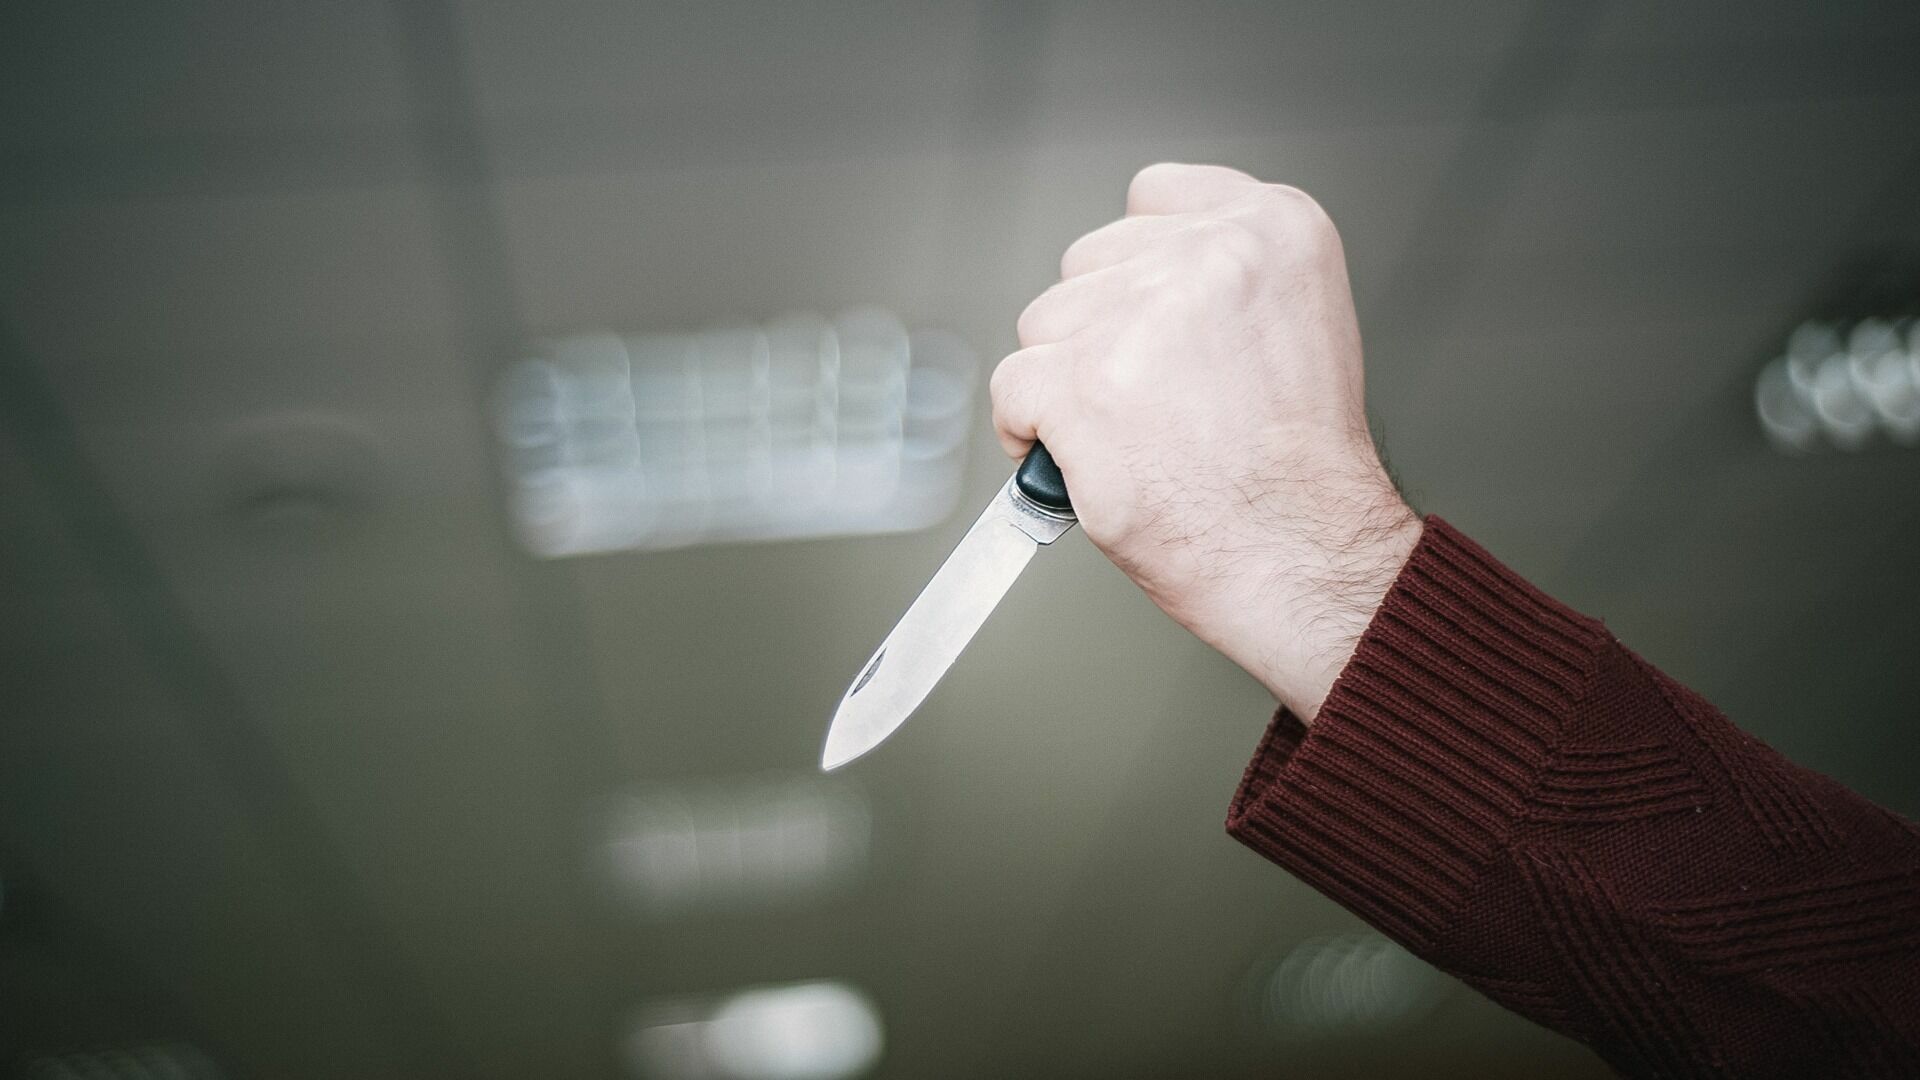 В Екатеринбурге разбойник украл нож из мастерской и угрожал им продавцу